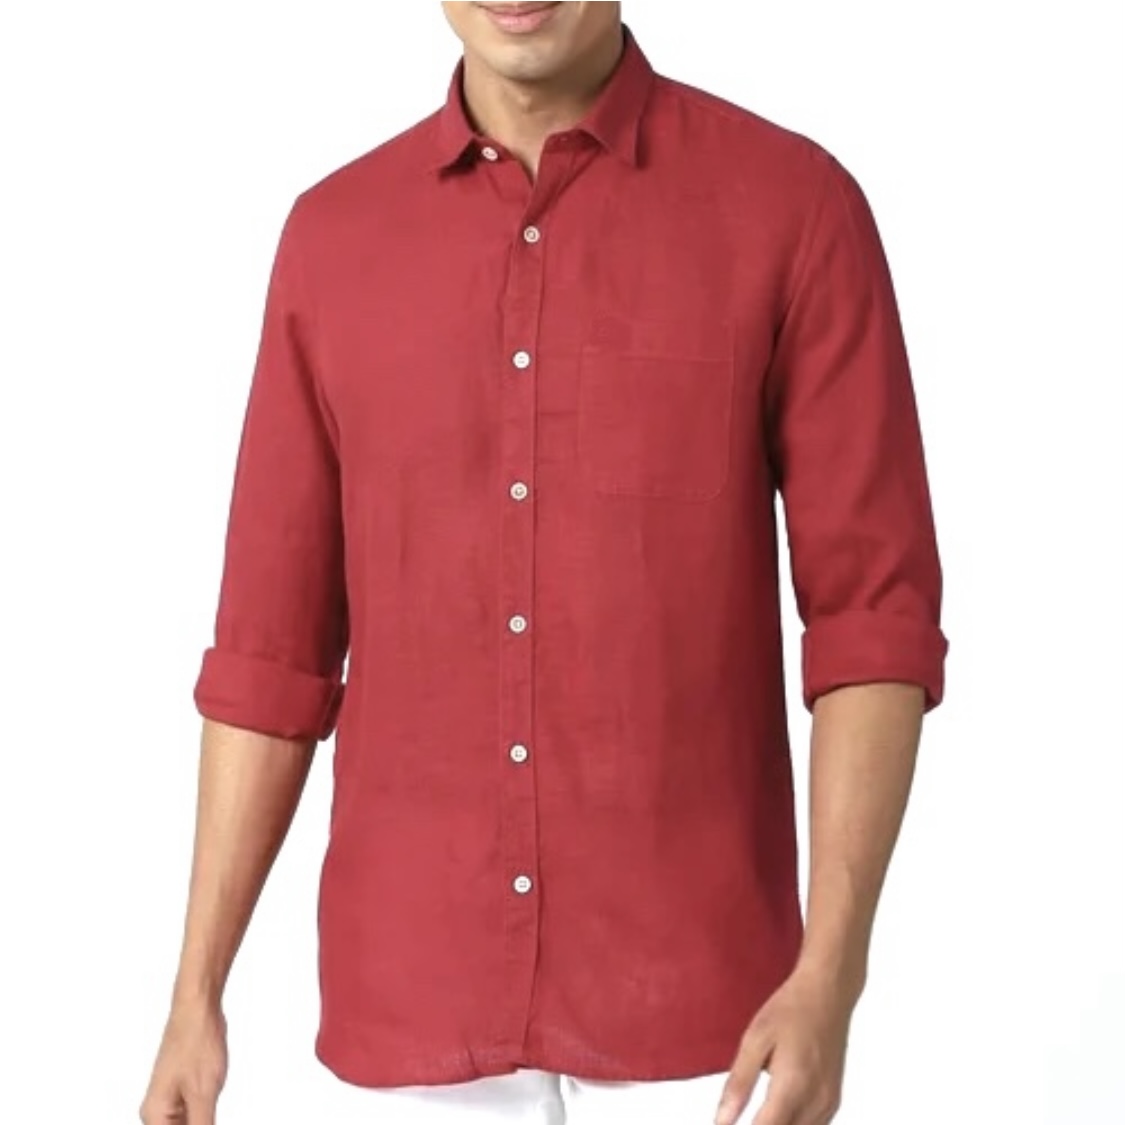 نکته خرید - قیمت روز پیراهن آستین بلند مردانه [جیوردانو مدل G11w1 خرید